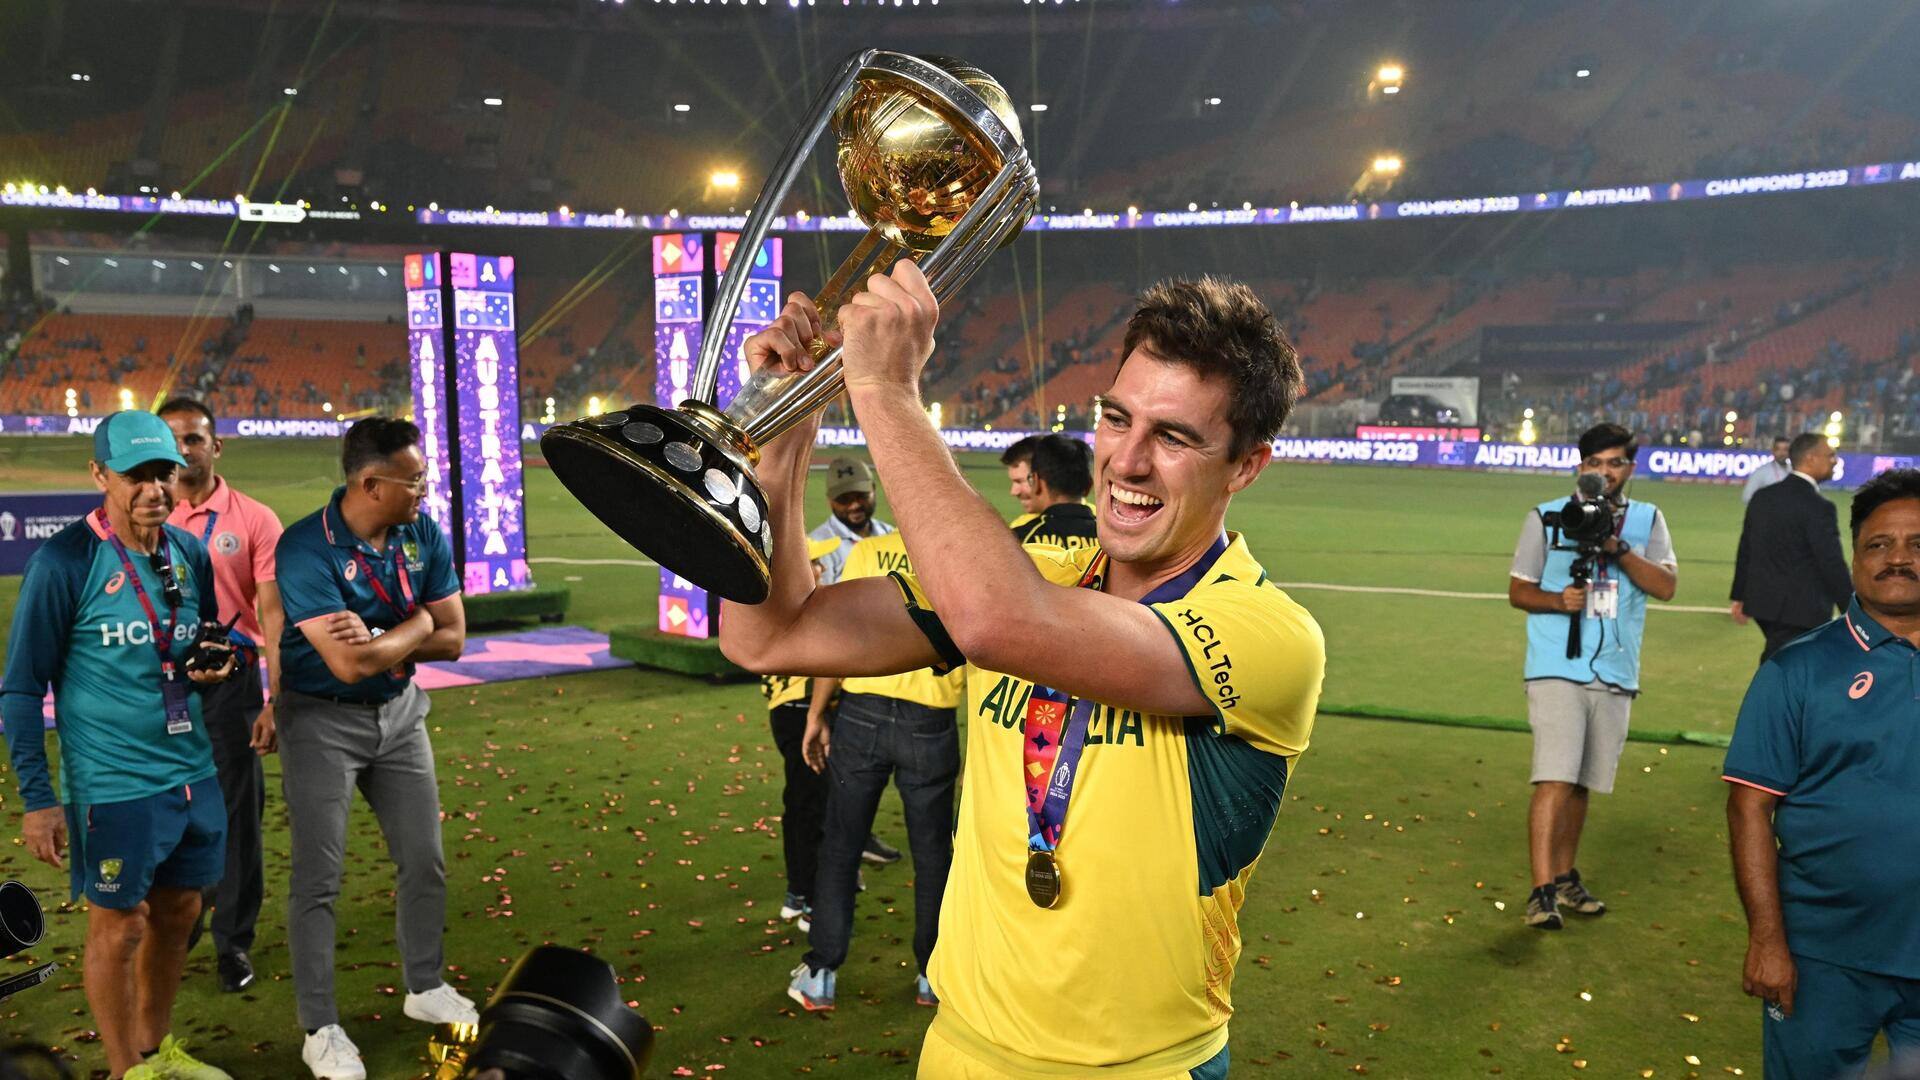 ऑस्ट्रेलिया को विश्व विजेता बनाने वाले कमिंस की वनडे में कैसी रही है कप्तानी? जानिए आंकड़े